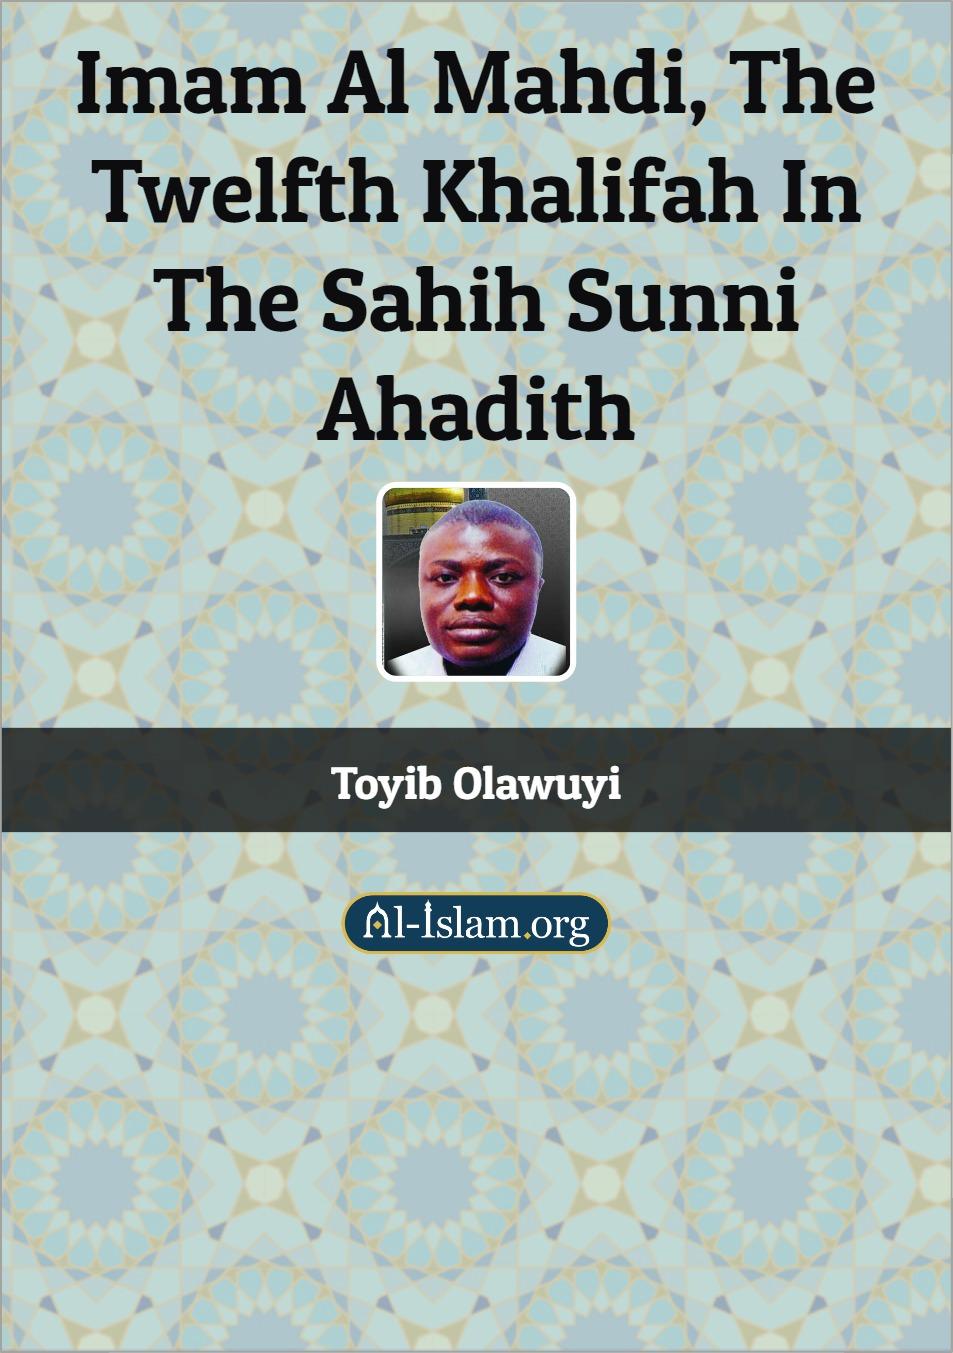 Imam Al Mahdi, The Twelfth Khalifah in the Sahih Sunni Ahadith